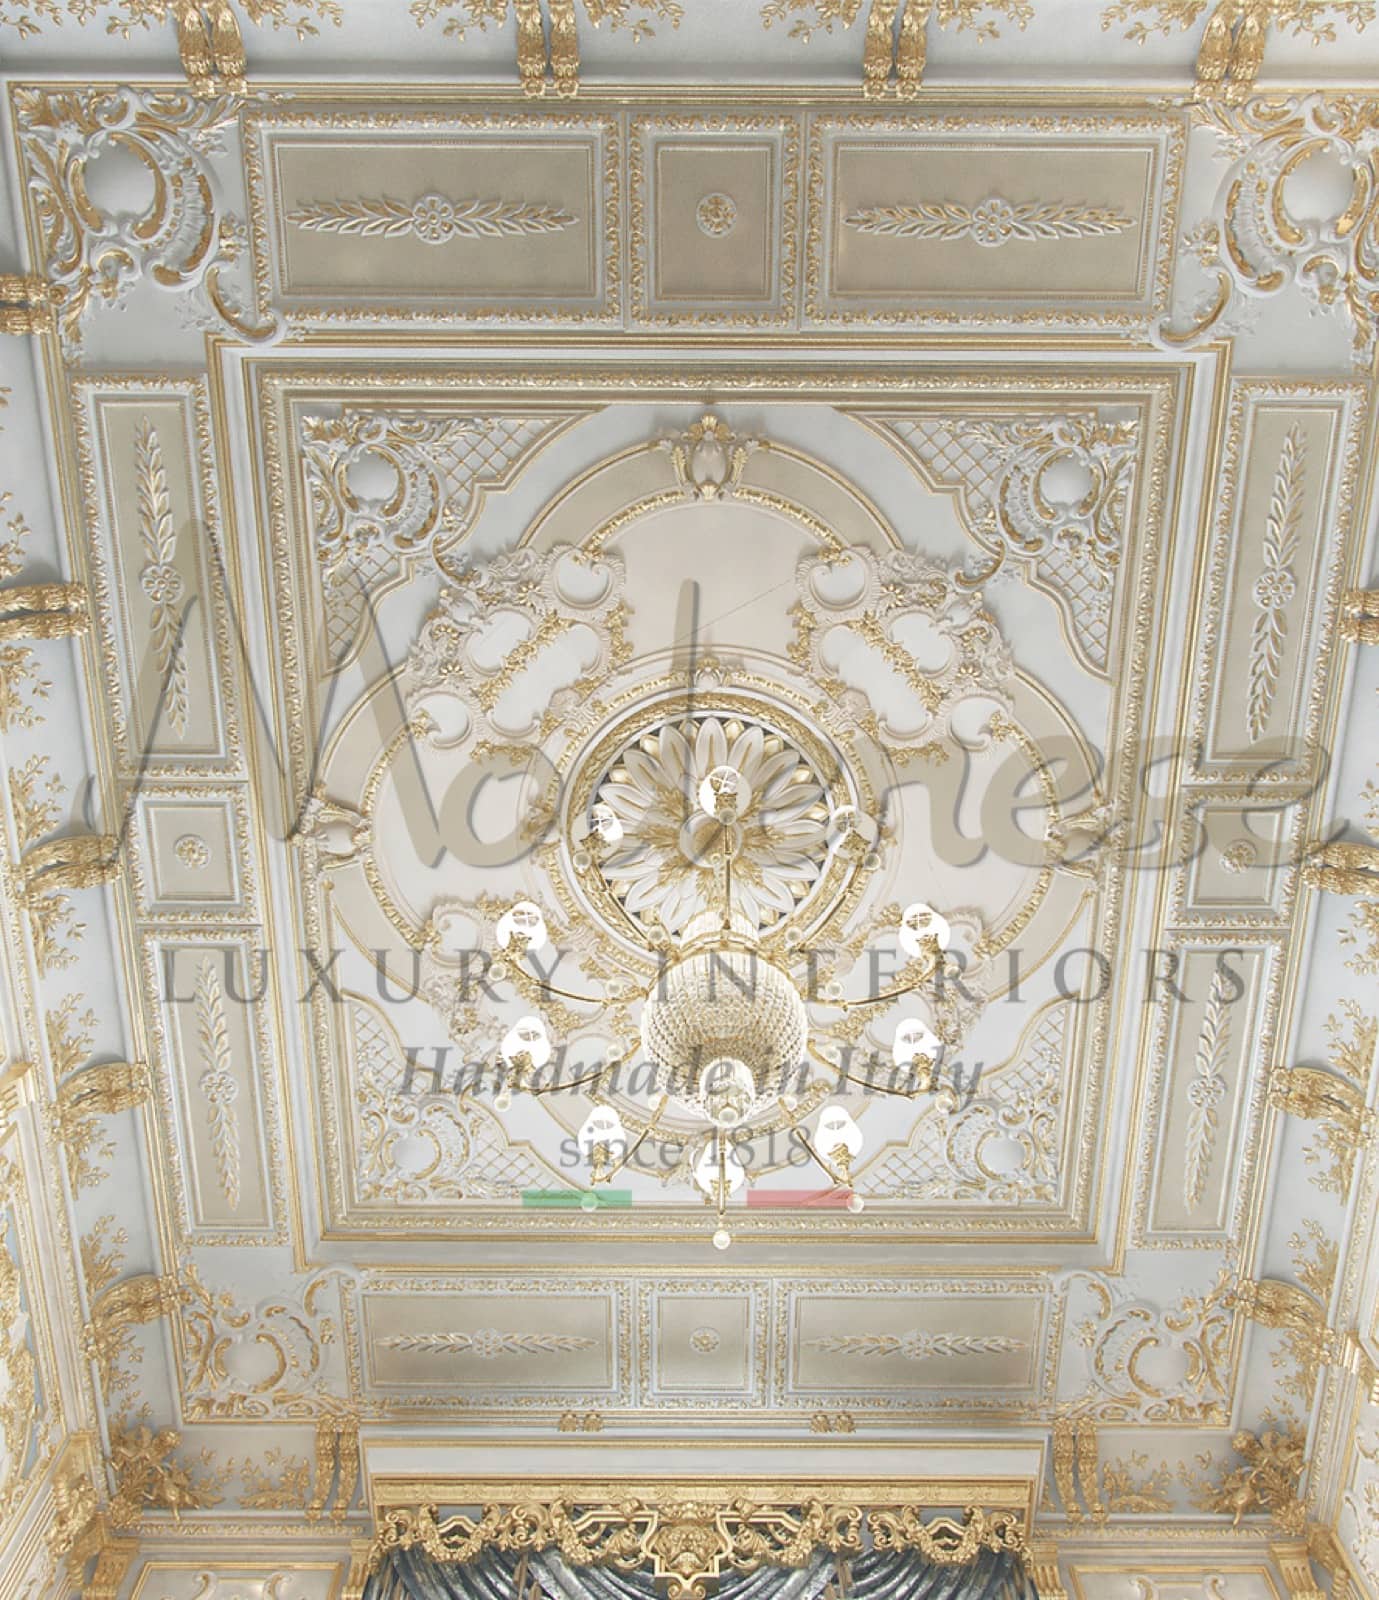 plafond en bois sculpté détails dorés application de feuille d'or idées de design d'intérieur classique baroque fait à la main décoration de style élégant sculpture de luxe lustre en boiserie conceptions personnalisées goût fait sur mesure villa palace sur mesure